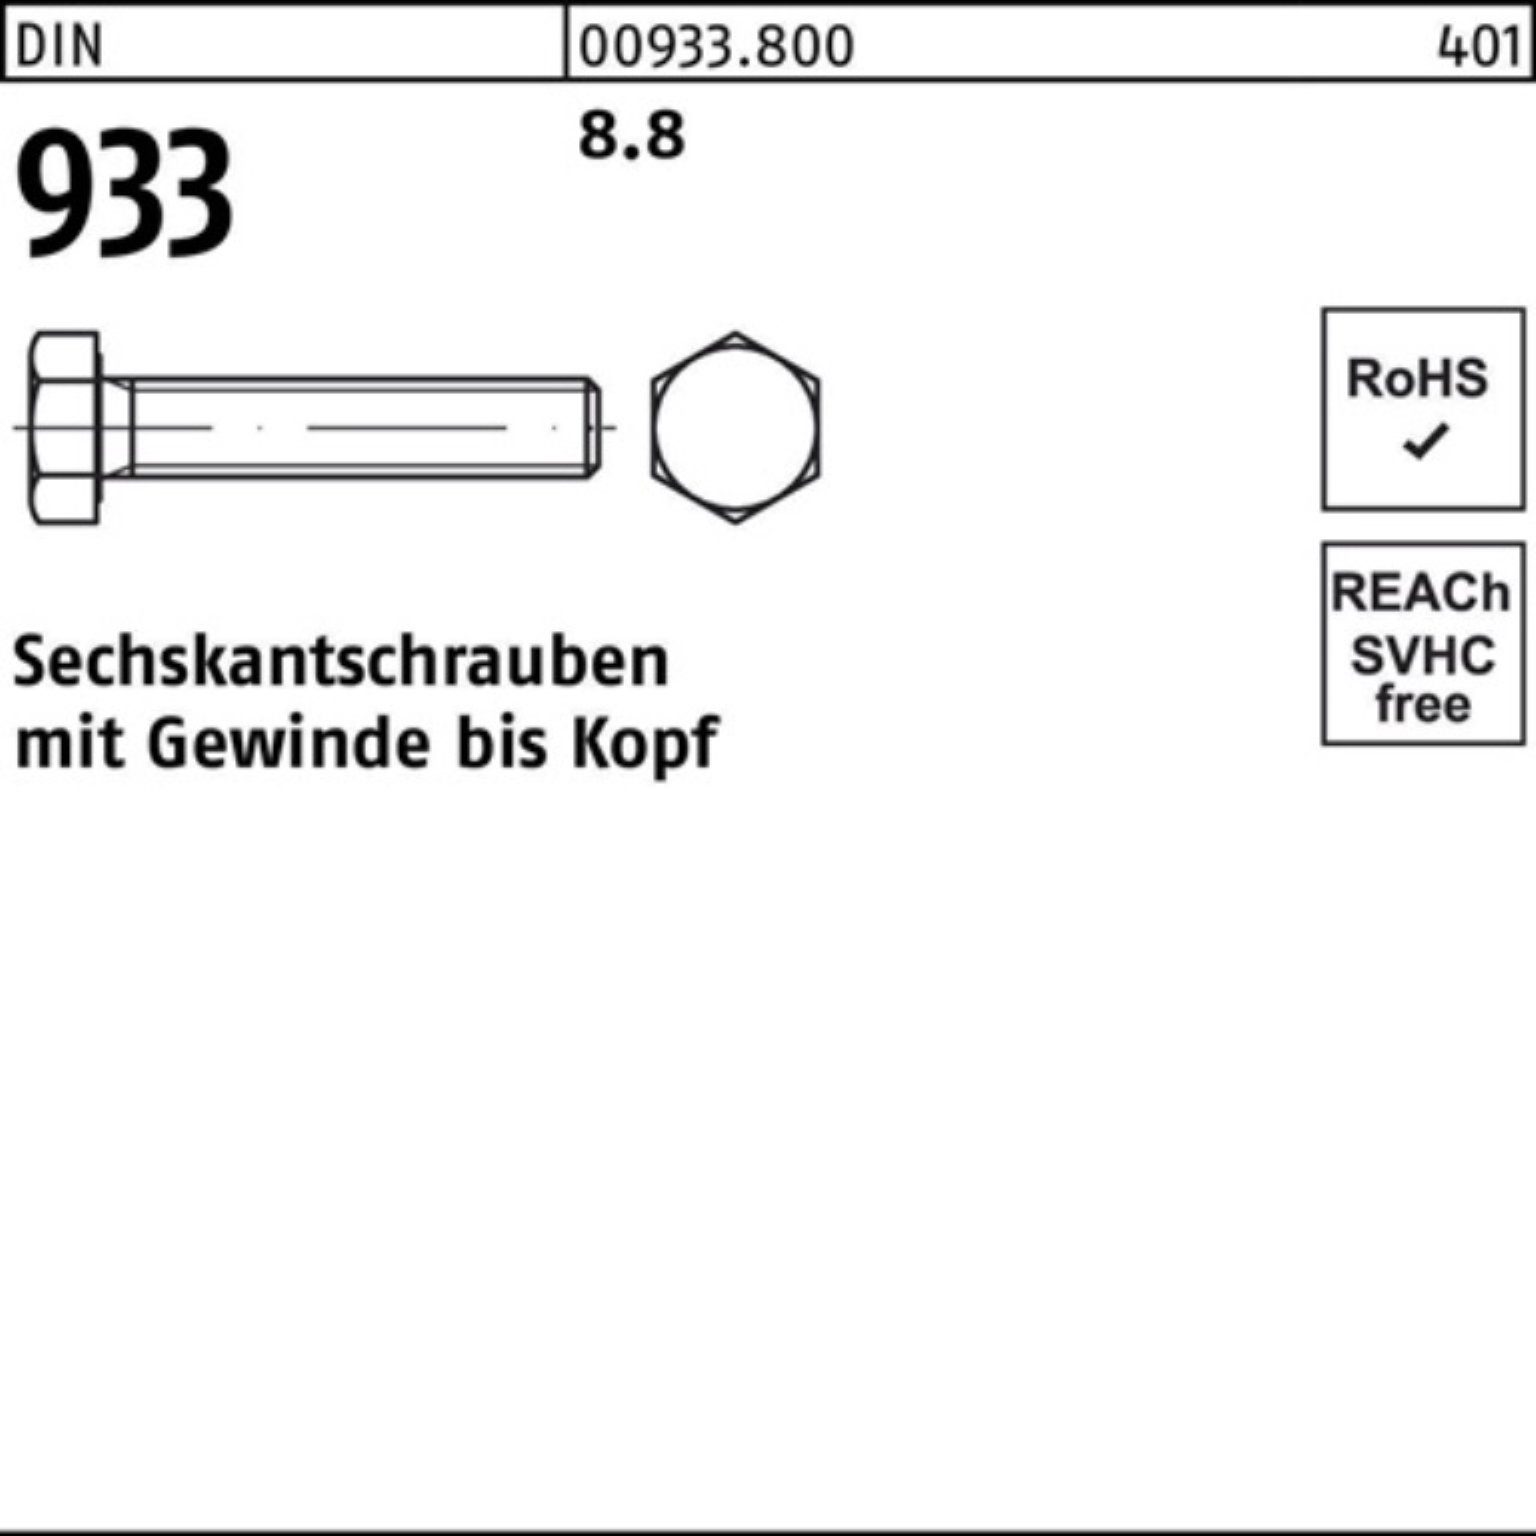 933 200 Reyher Sechskantschraube Stück Sechskantschraube 200er M5x 933 8.8 Pack DIN VG 40 DIN